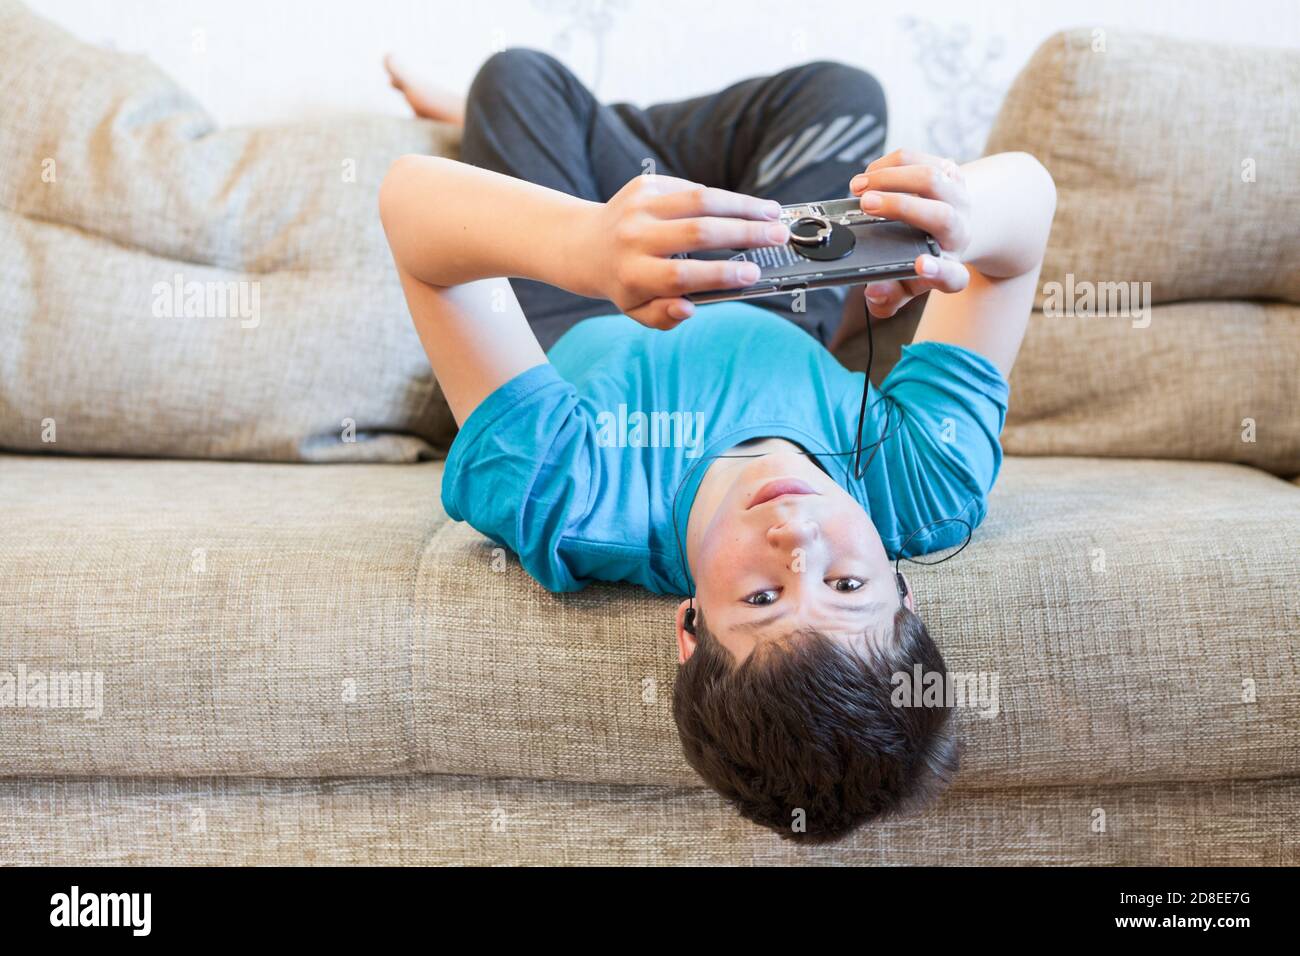 Attraktiver Jugendlicher in blauem T-Shirt auf dem Rücken auf der Couch liegend und Smartphone in den Händen haltend, in sozialen Medien surfen Stockfoto